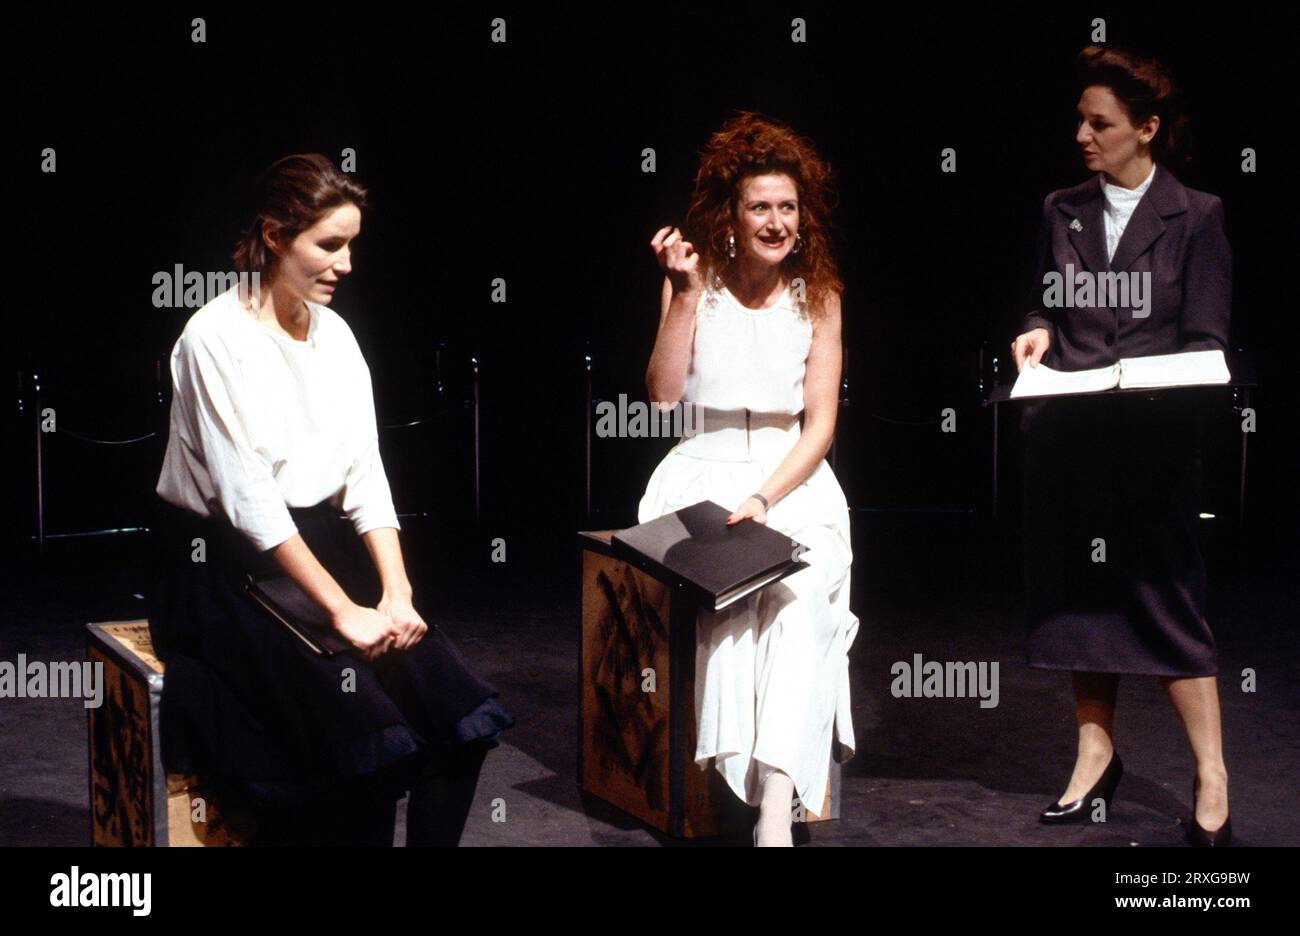 l-r: Julia Lane (Jessica), Julie Legrand (Portia Contarini), Jan Shand (Nerissa) in una lettura provata di SHYLOCK scritto e diretto da Arnold Wesker ai Riverside Studios, Londra W6 16/10/1989 Foto Stock